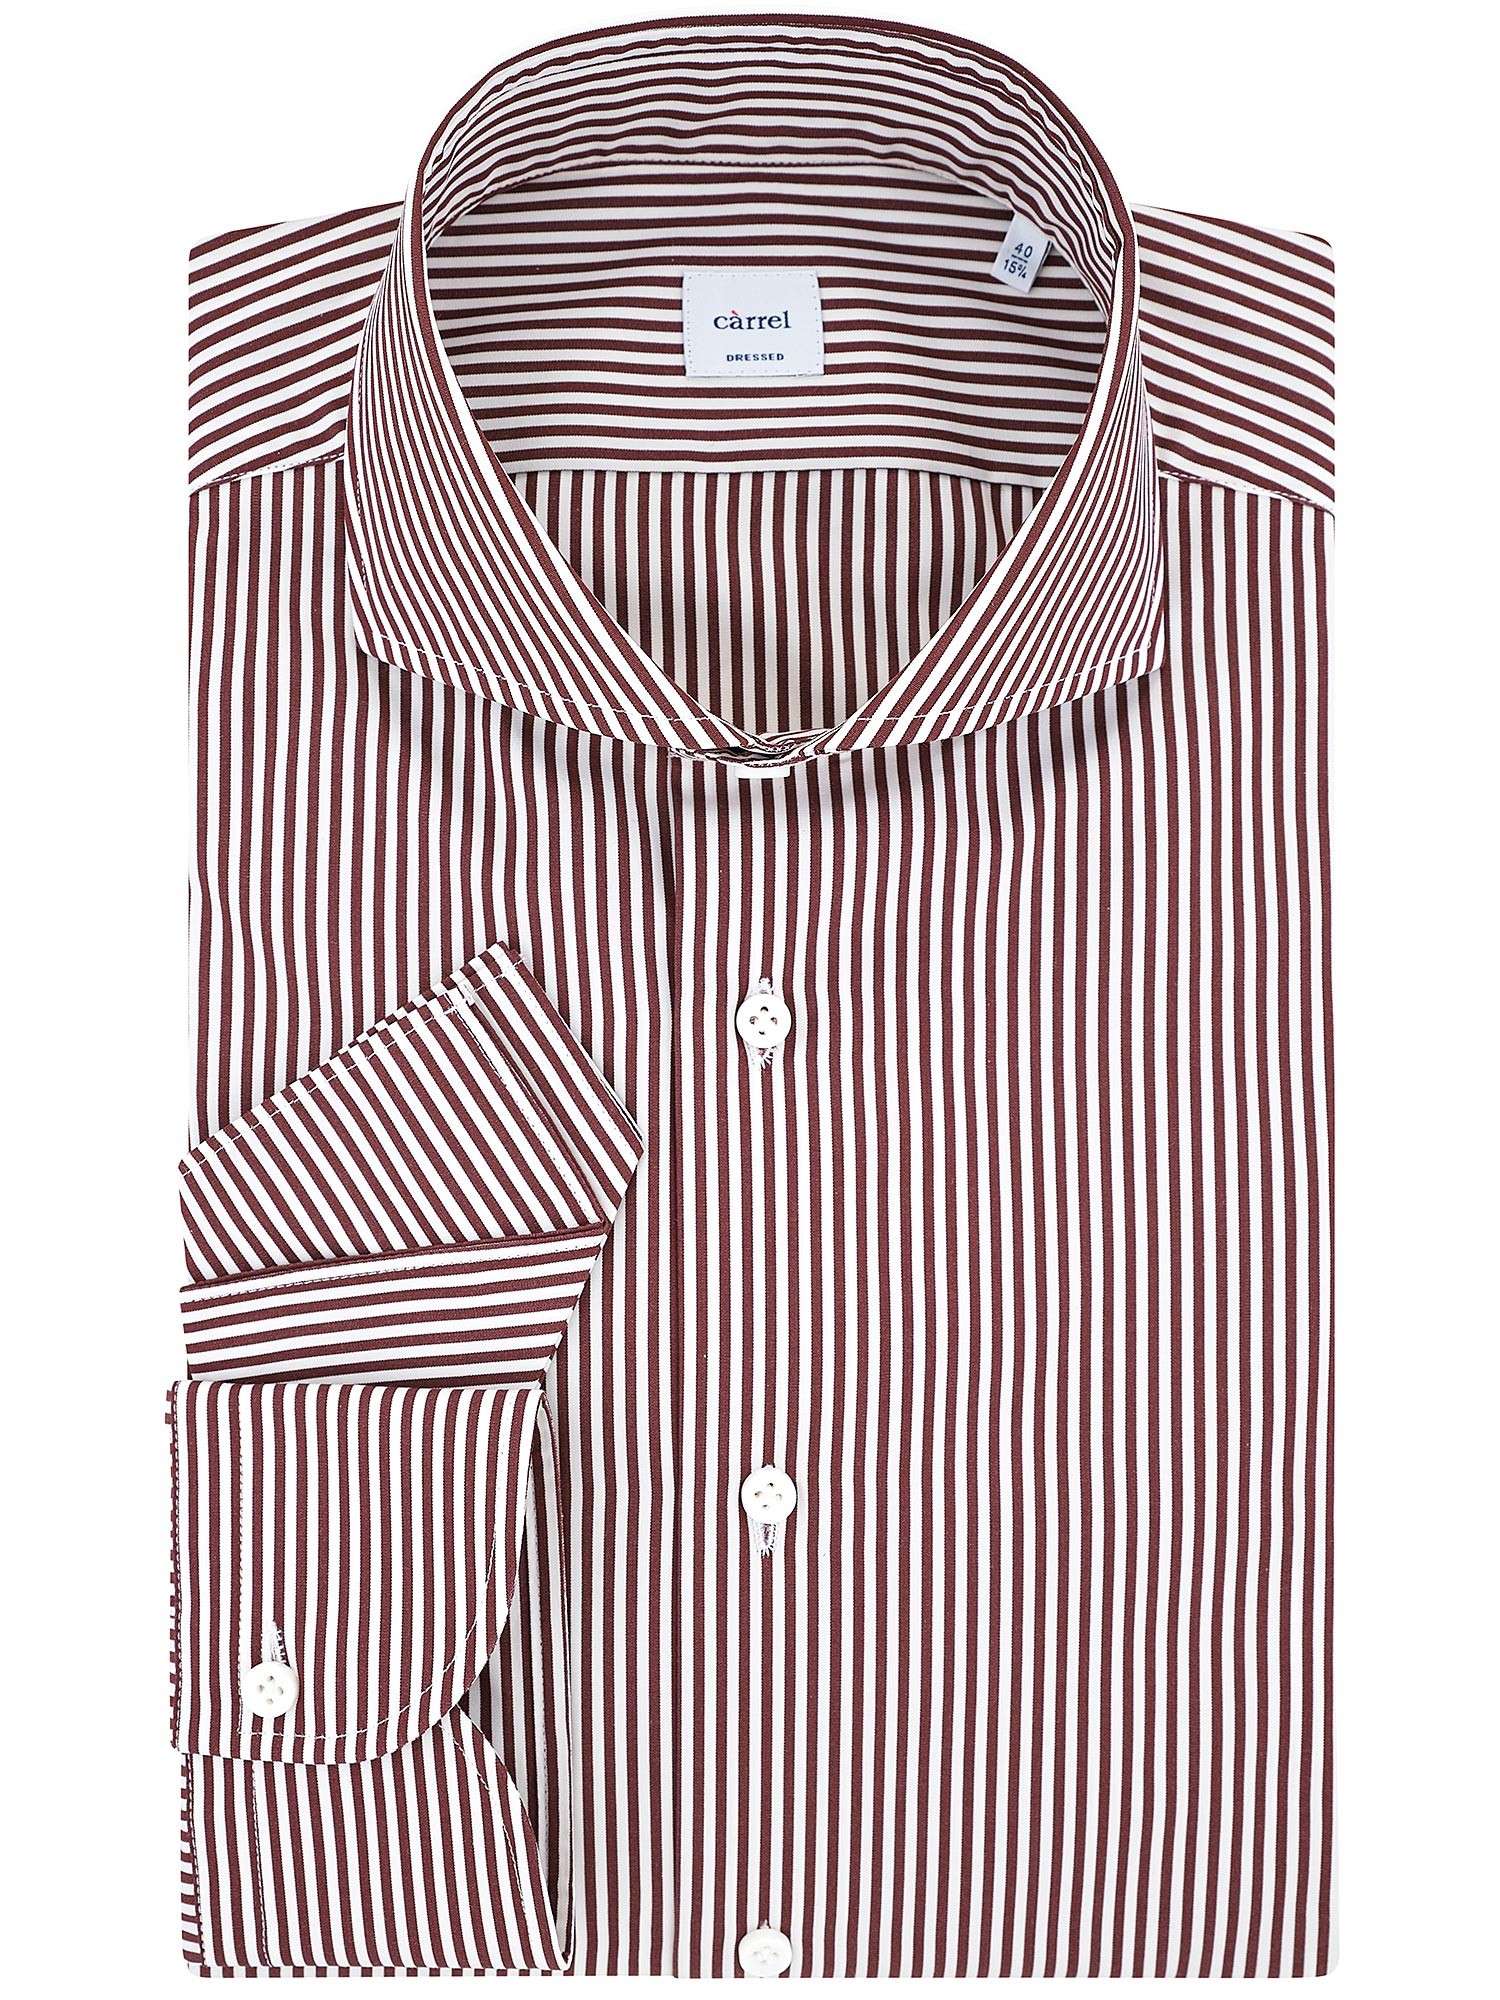 Càrrel - Men's burgundy striped shirt